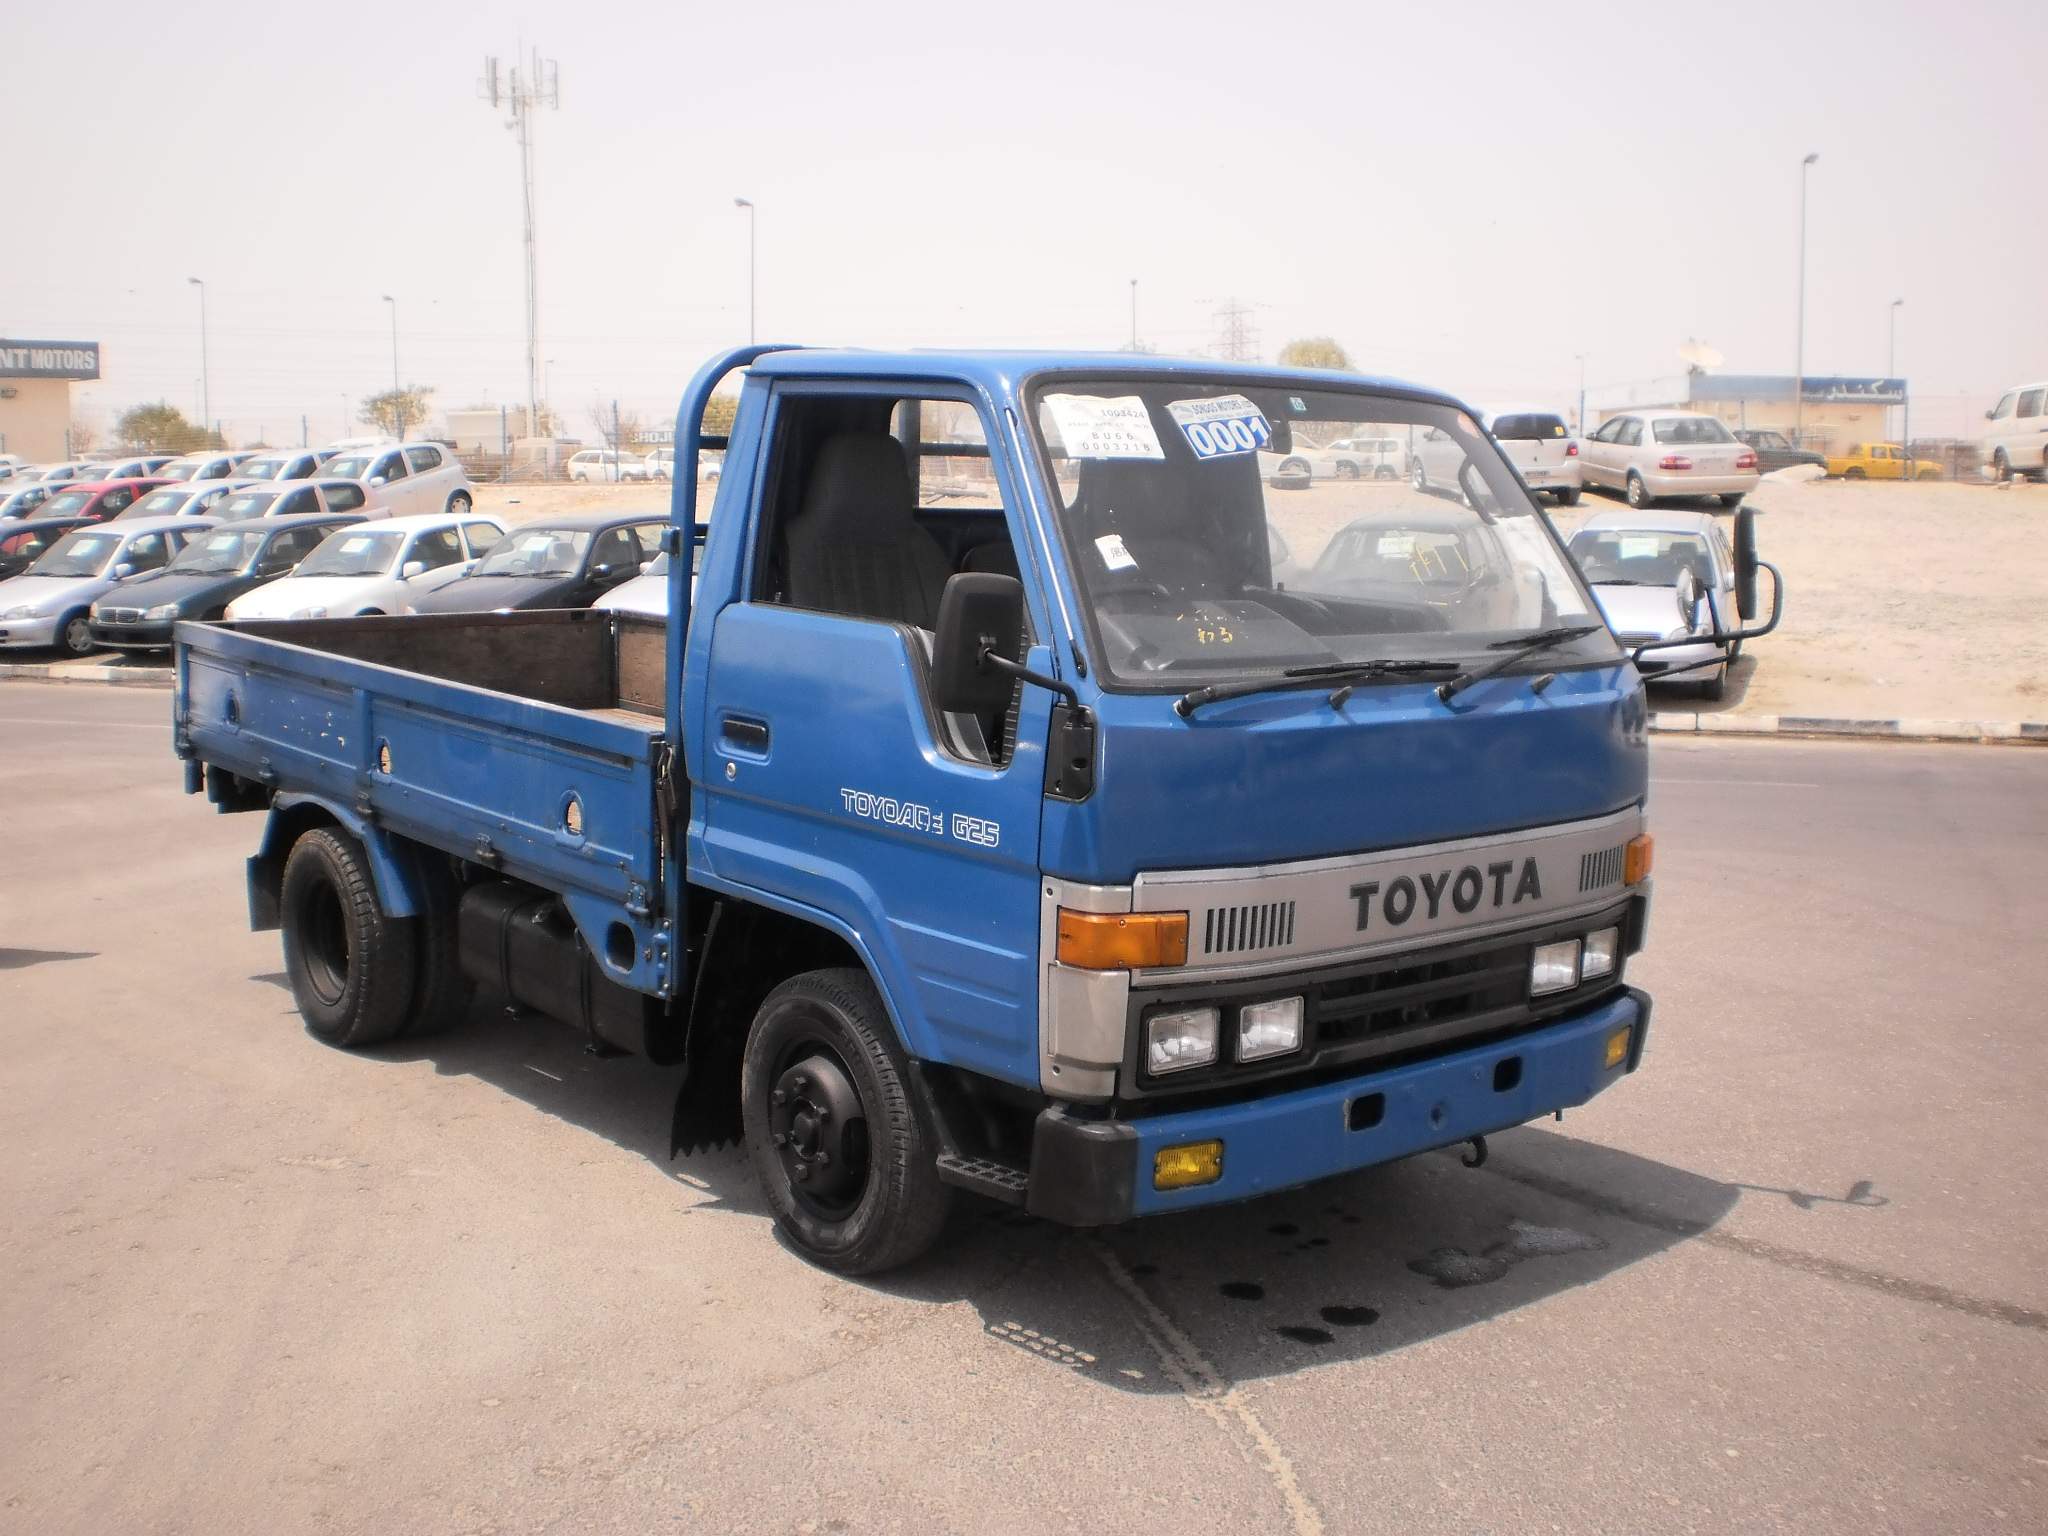 Modèle: Toyota 6500